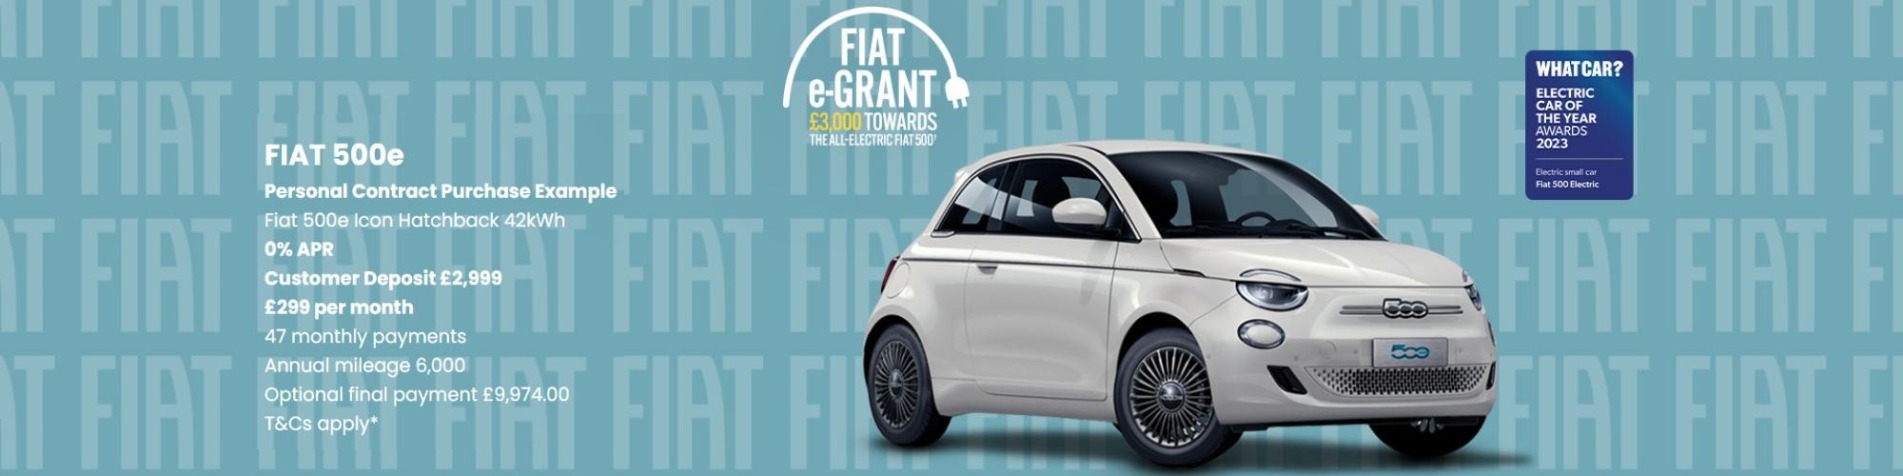 Fiat e-GRANT